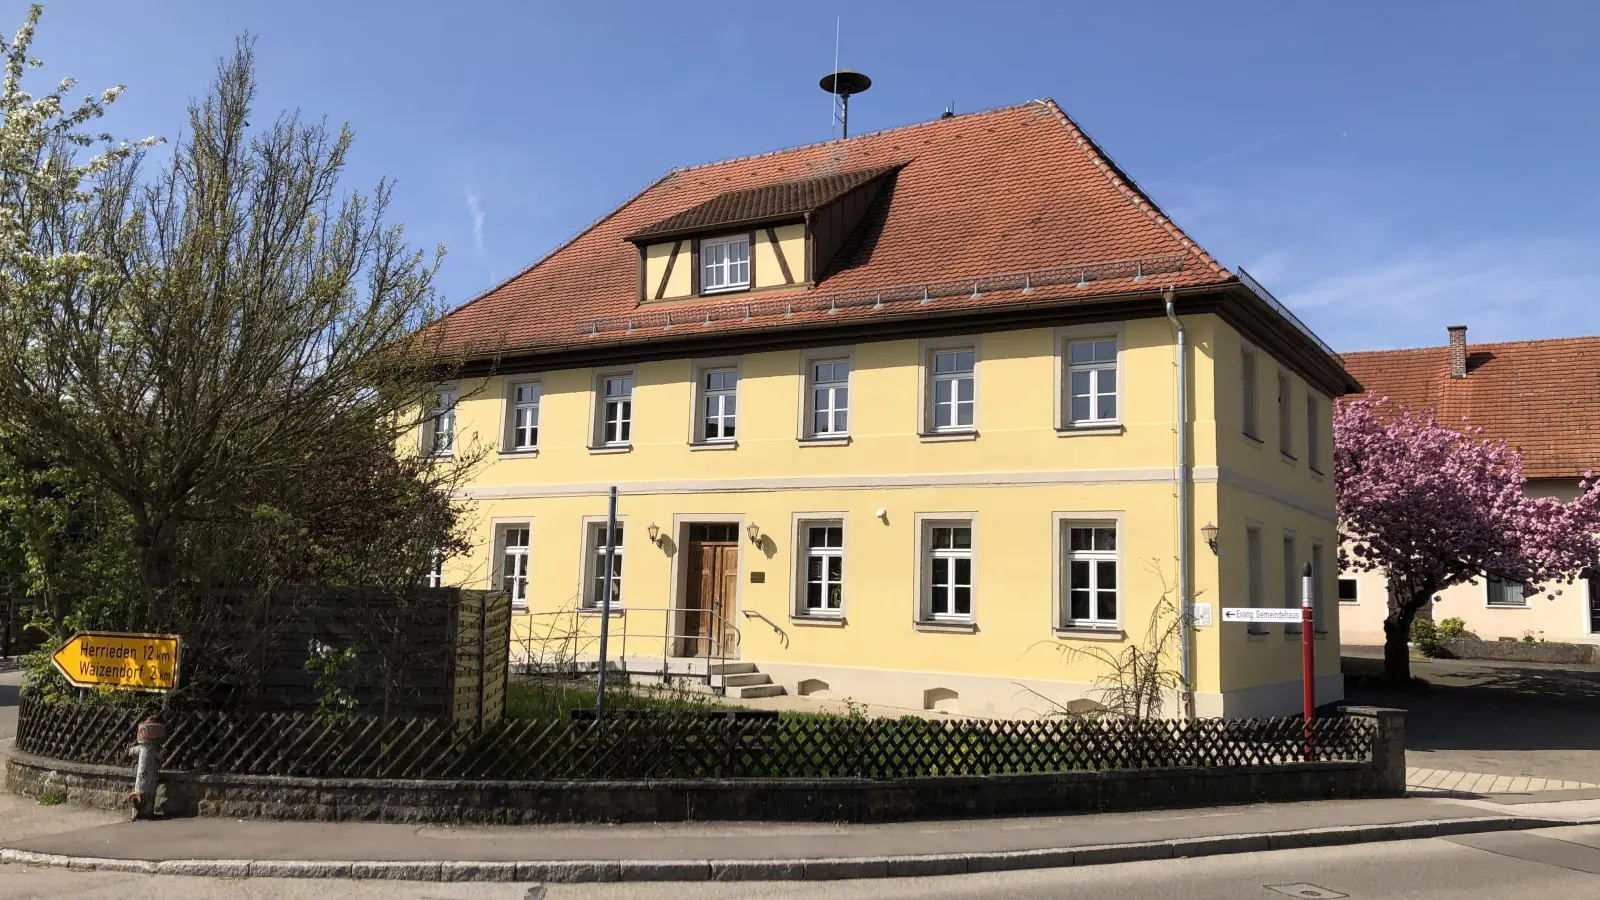 Das ehemalige alte Schulhaus an der Münsterstraße dient heute als evangelisches Gemeindehaus. Das Gebäude wurde in den Jahren 2013 bis 2017 mit viel Eigenleistung komplett renoviert. (Foto: Johannes Flierl)